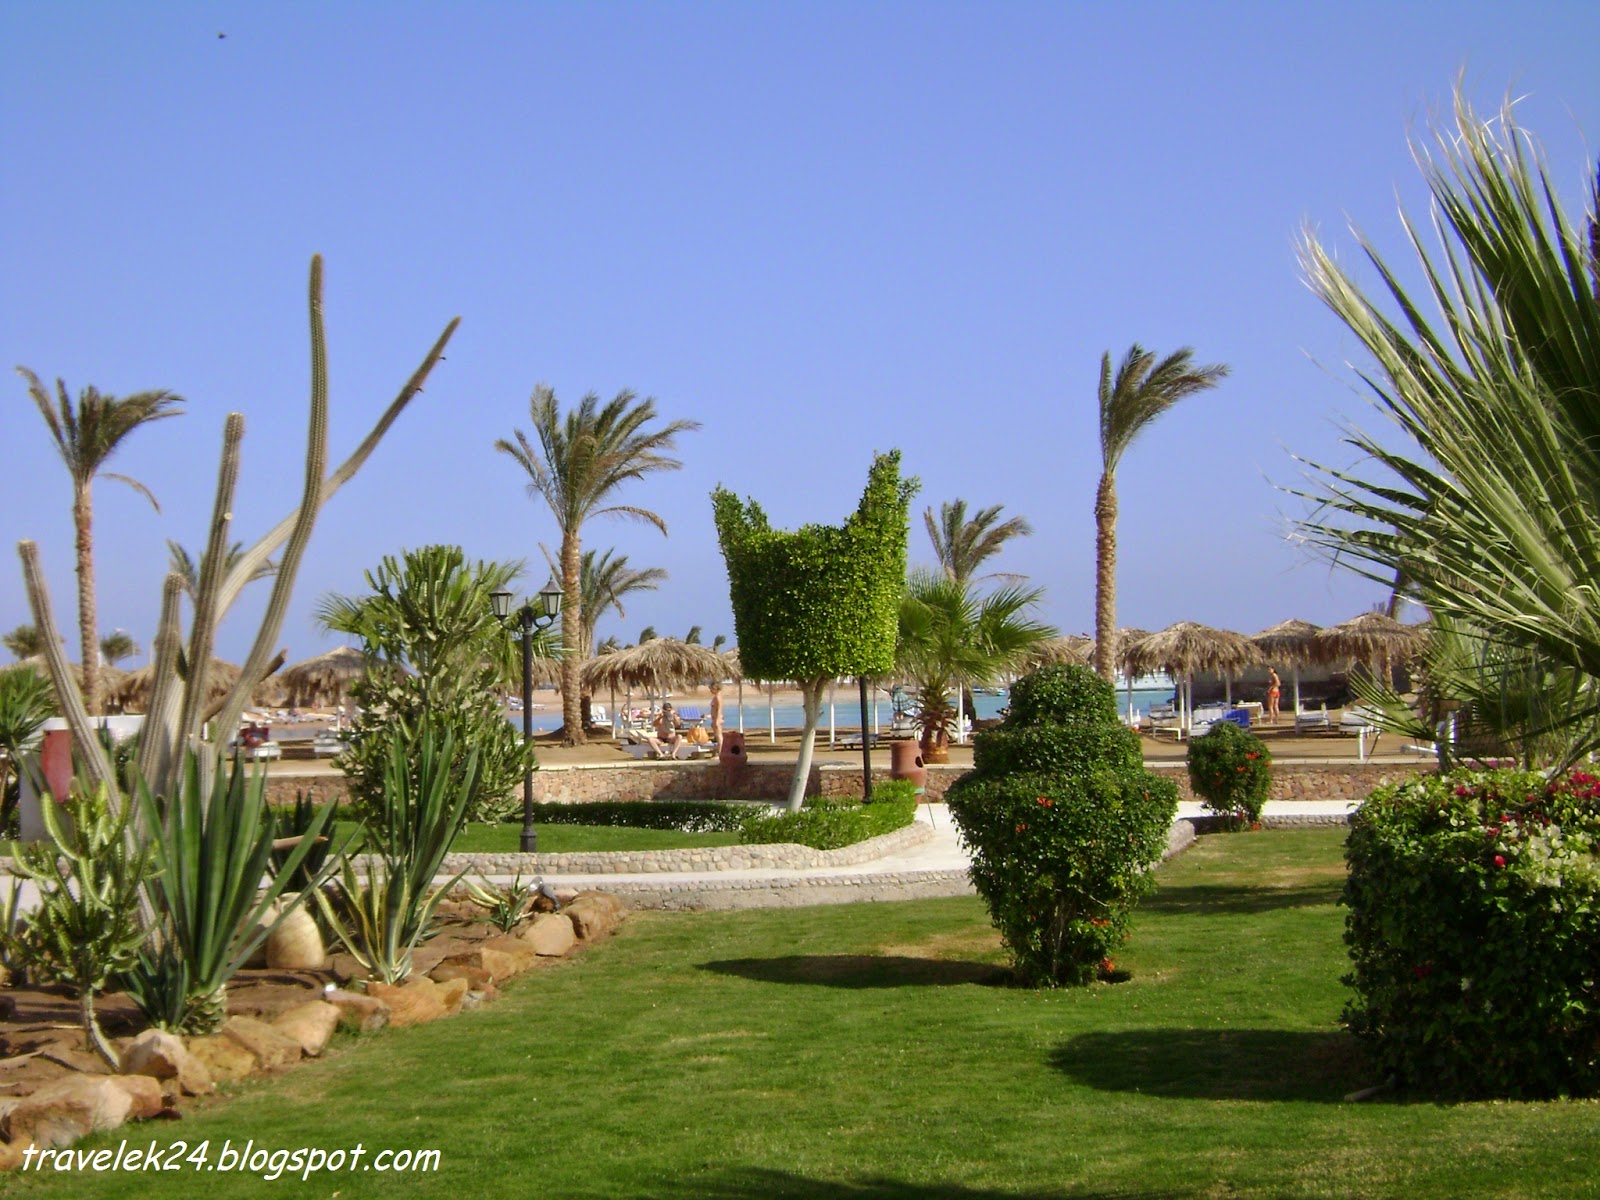 Kompleks hotelowy w Hurghadzie, Egipt